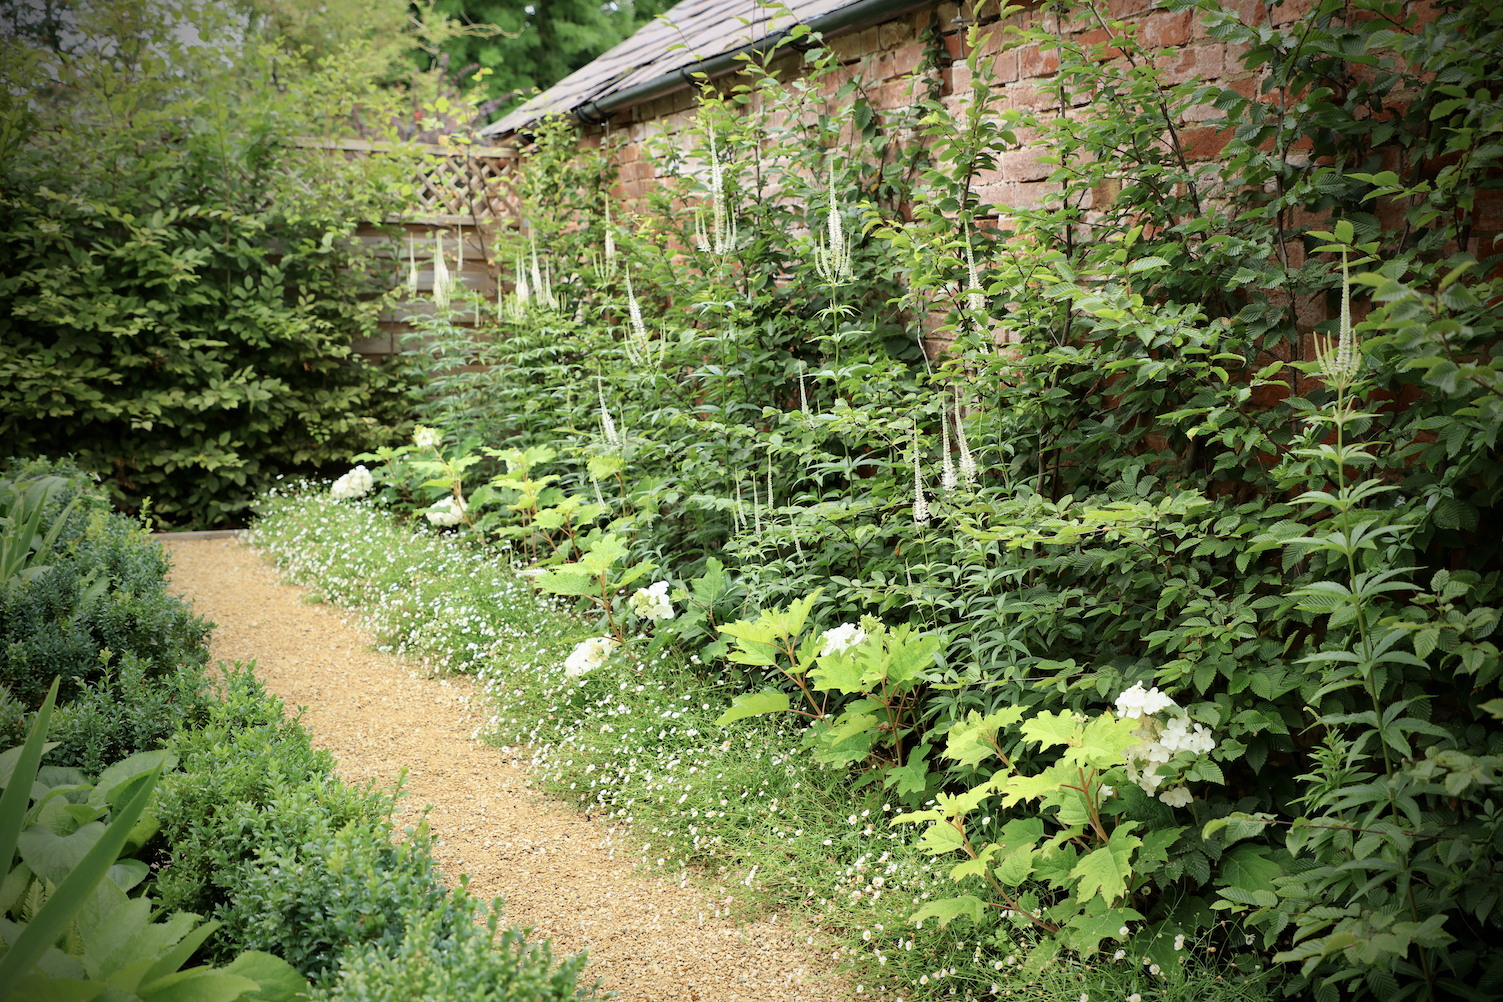 Hoggin pathway through parterre garden in oxfordshire